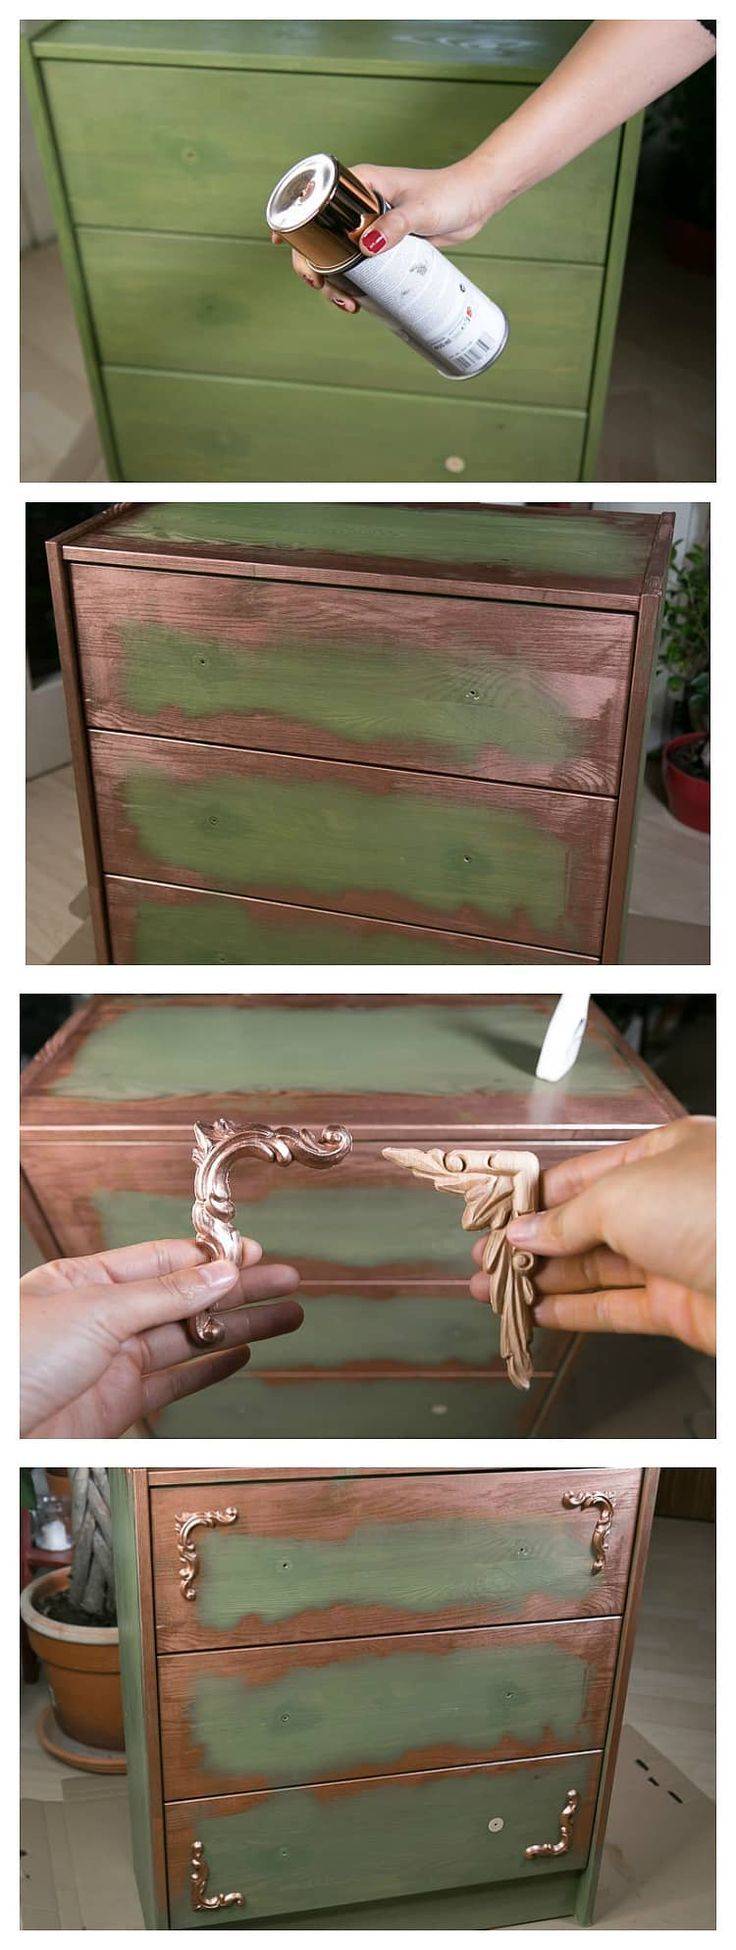 реставрация старого комода своими руками в домашних условиях пошаговая инструкция